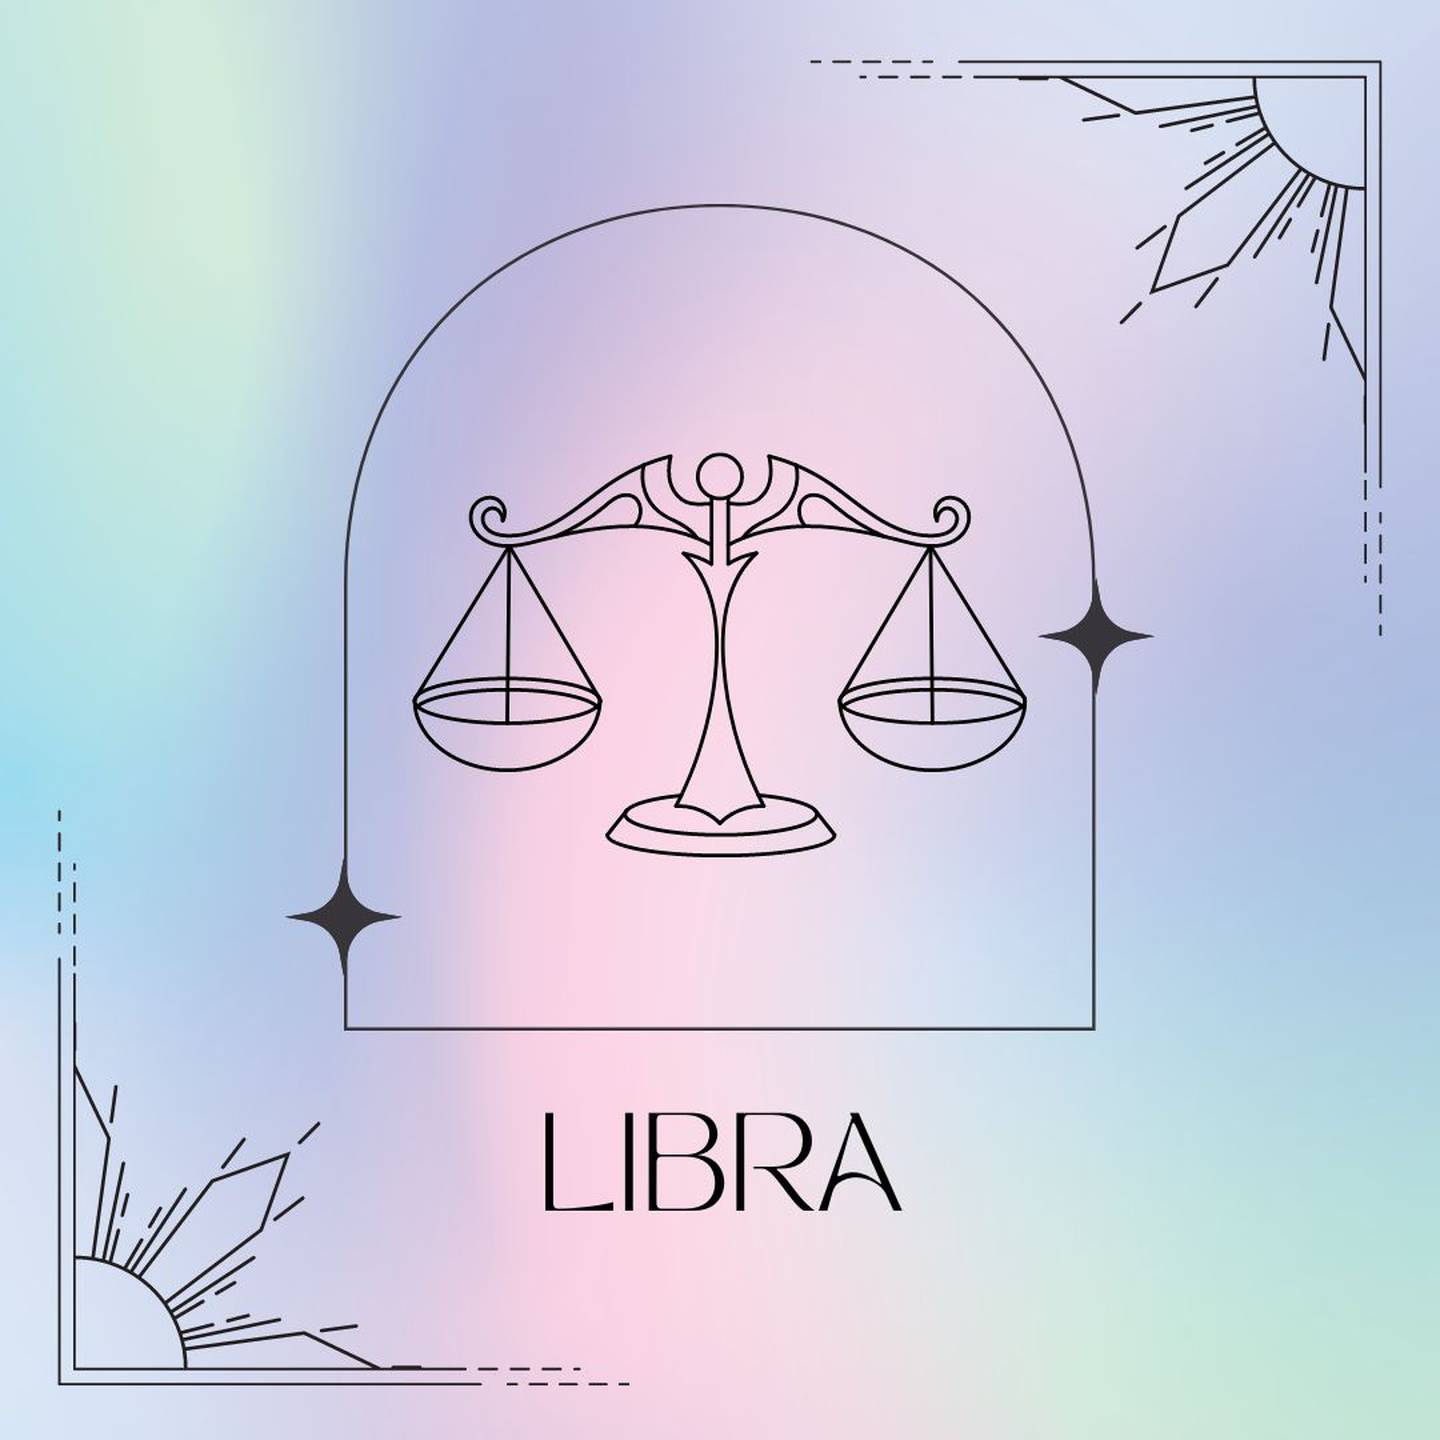 Dibujado en negro, el símbolo de Libra aparece enmarcado sobre un fondo de suaves colores pastel.